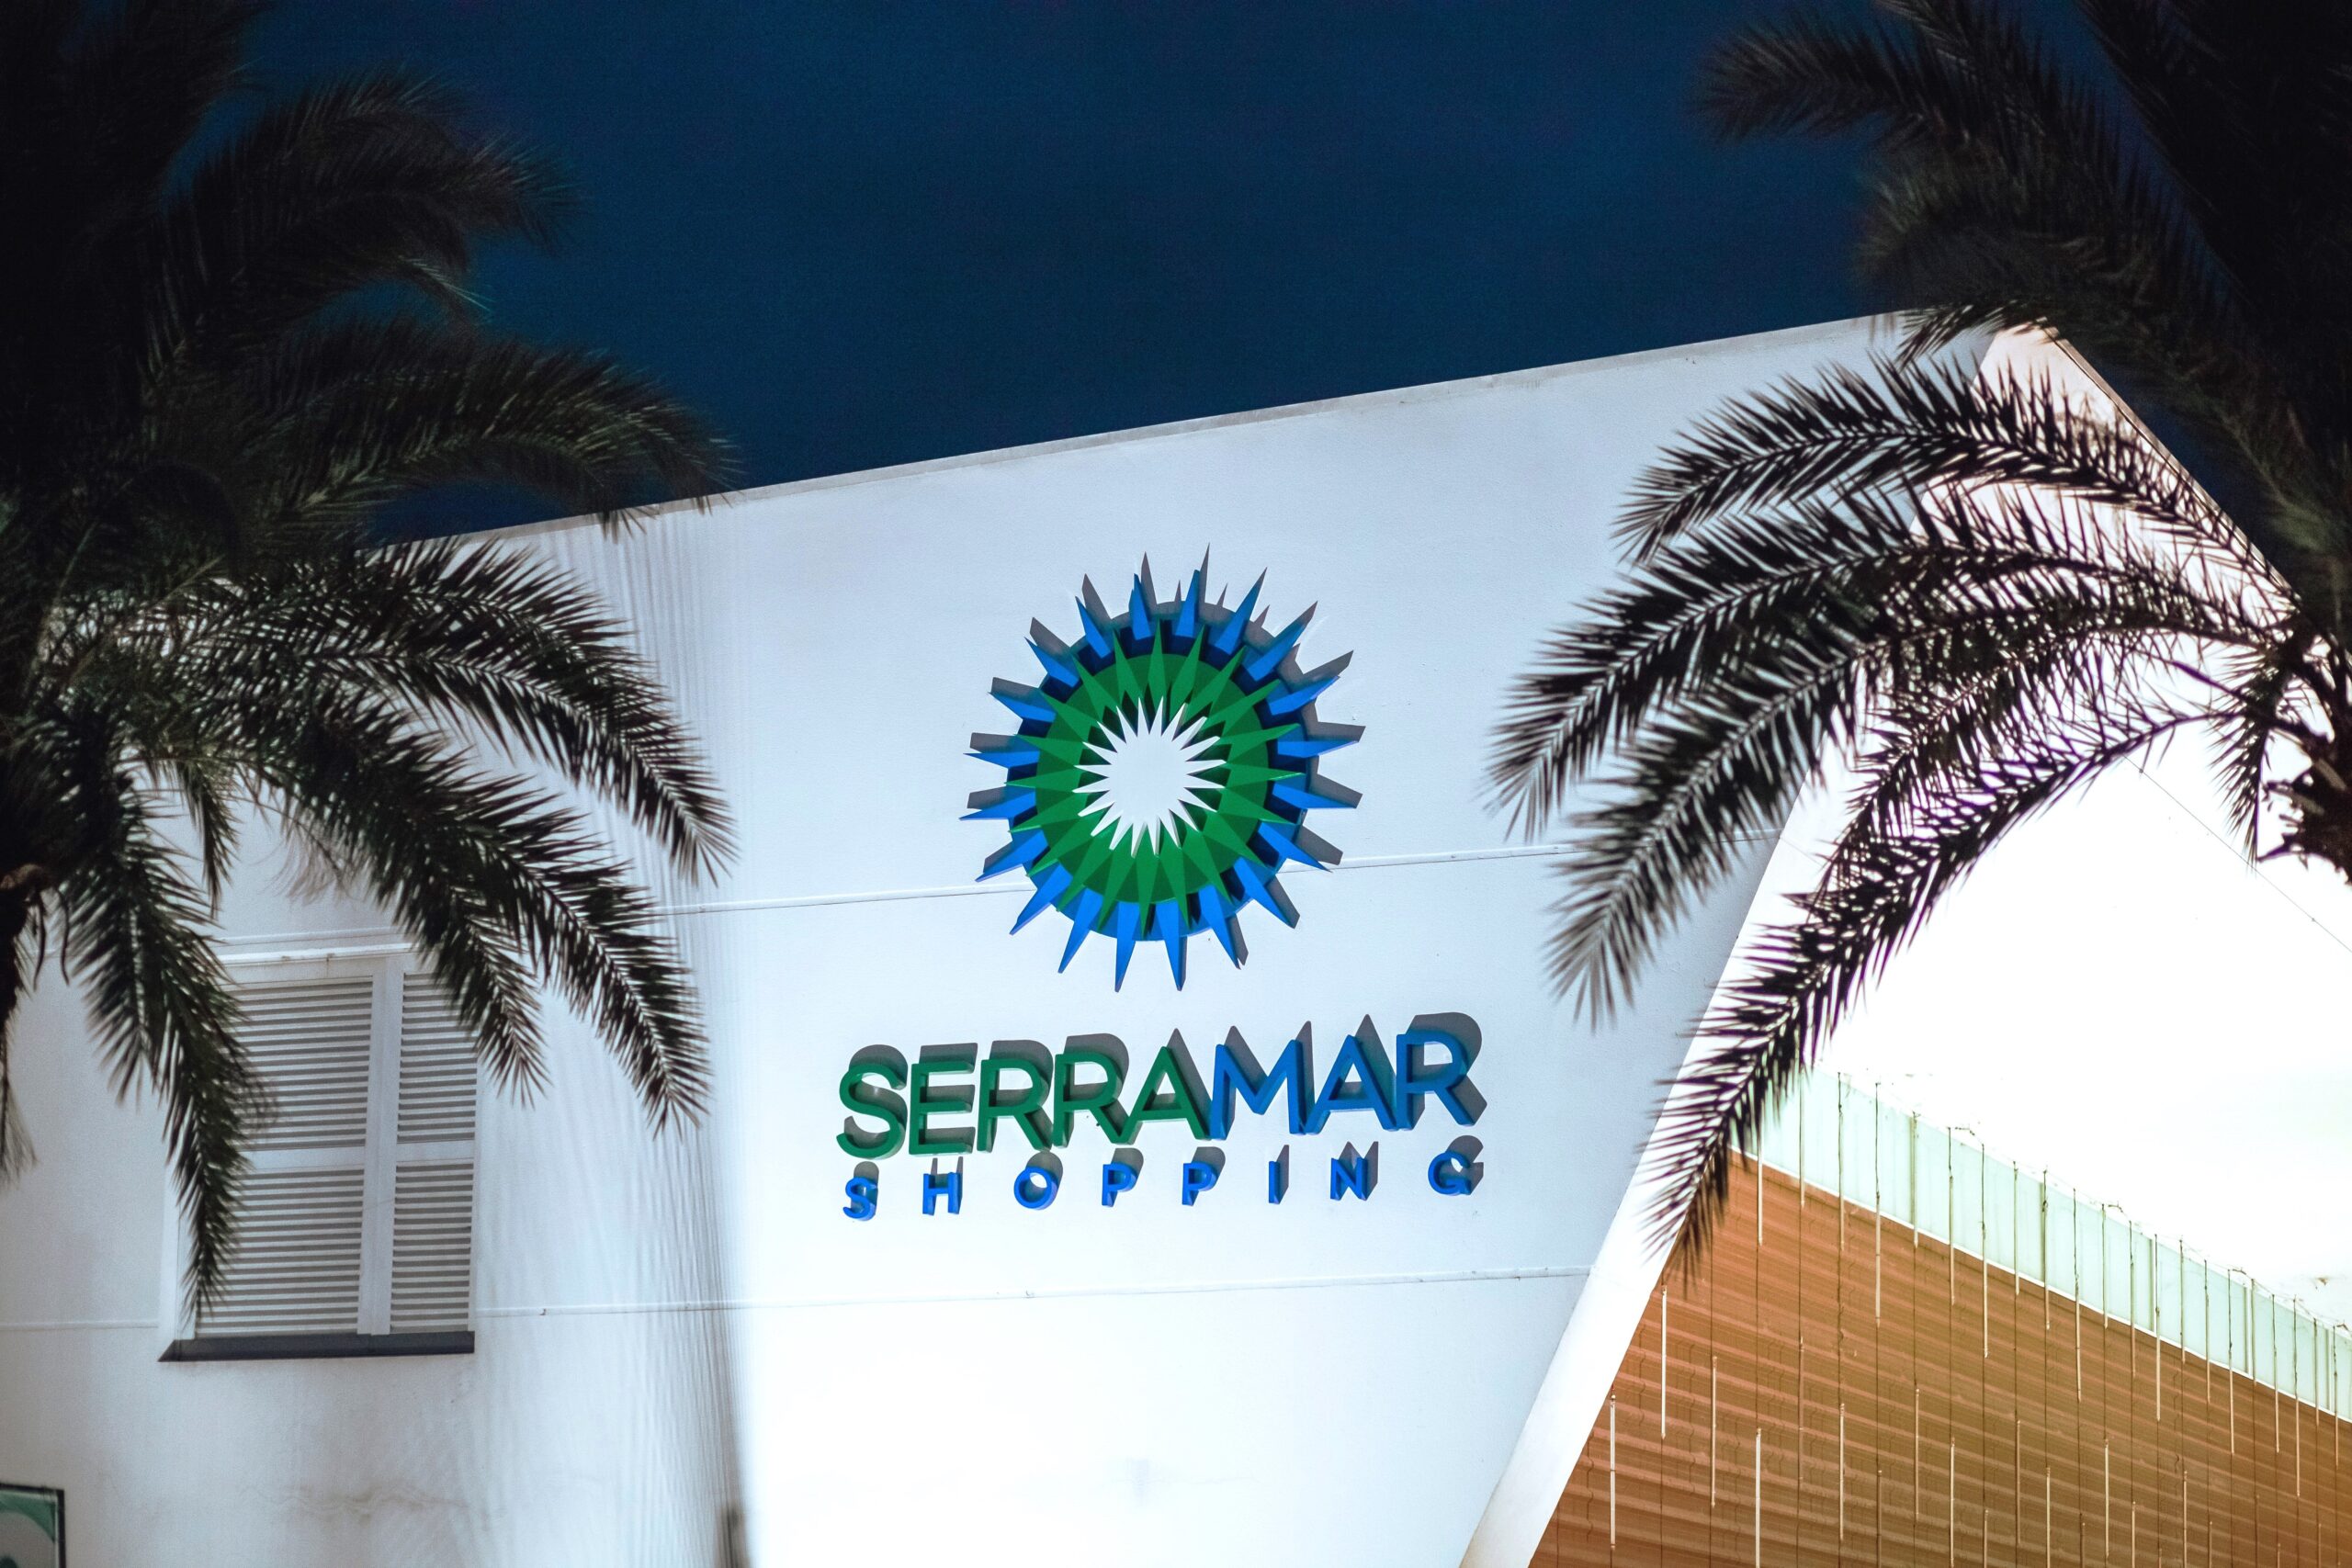 Serramar Shopping comemora 10 anos com show de Prêmios